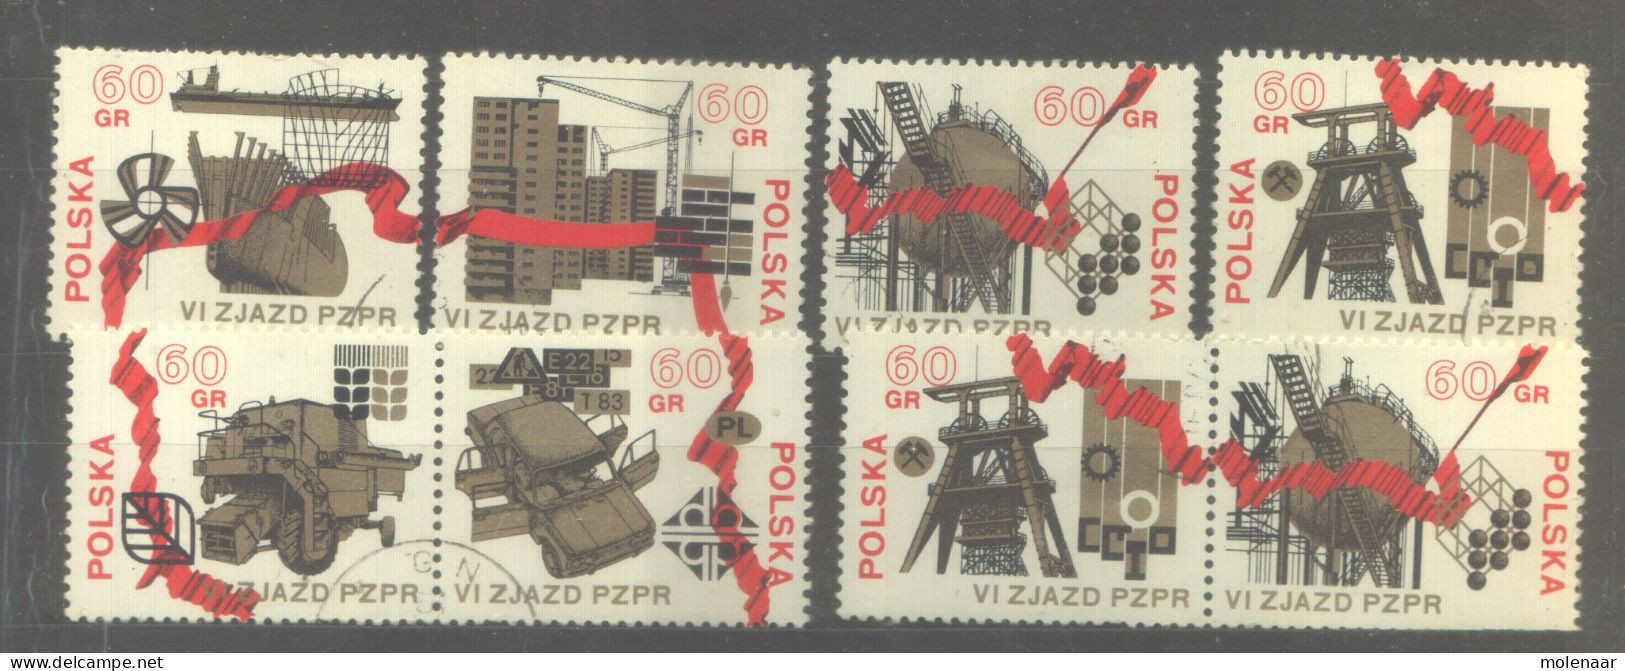 Postzegels > Europa > Polen > 1944-.... Republiek > 1971-80 > Gebruikt 2120-2125 (12061) - Usados